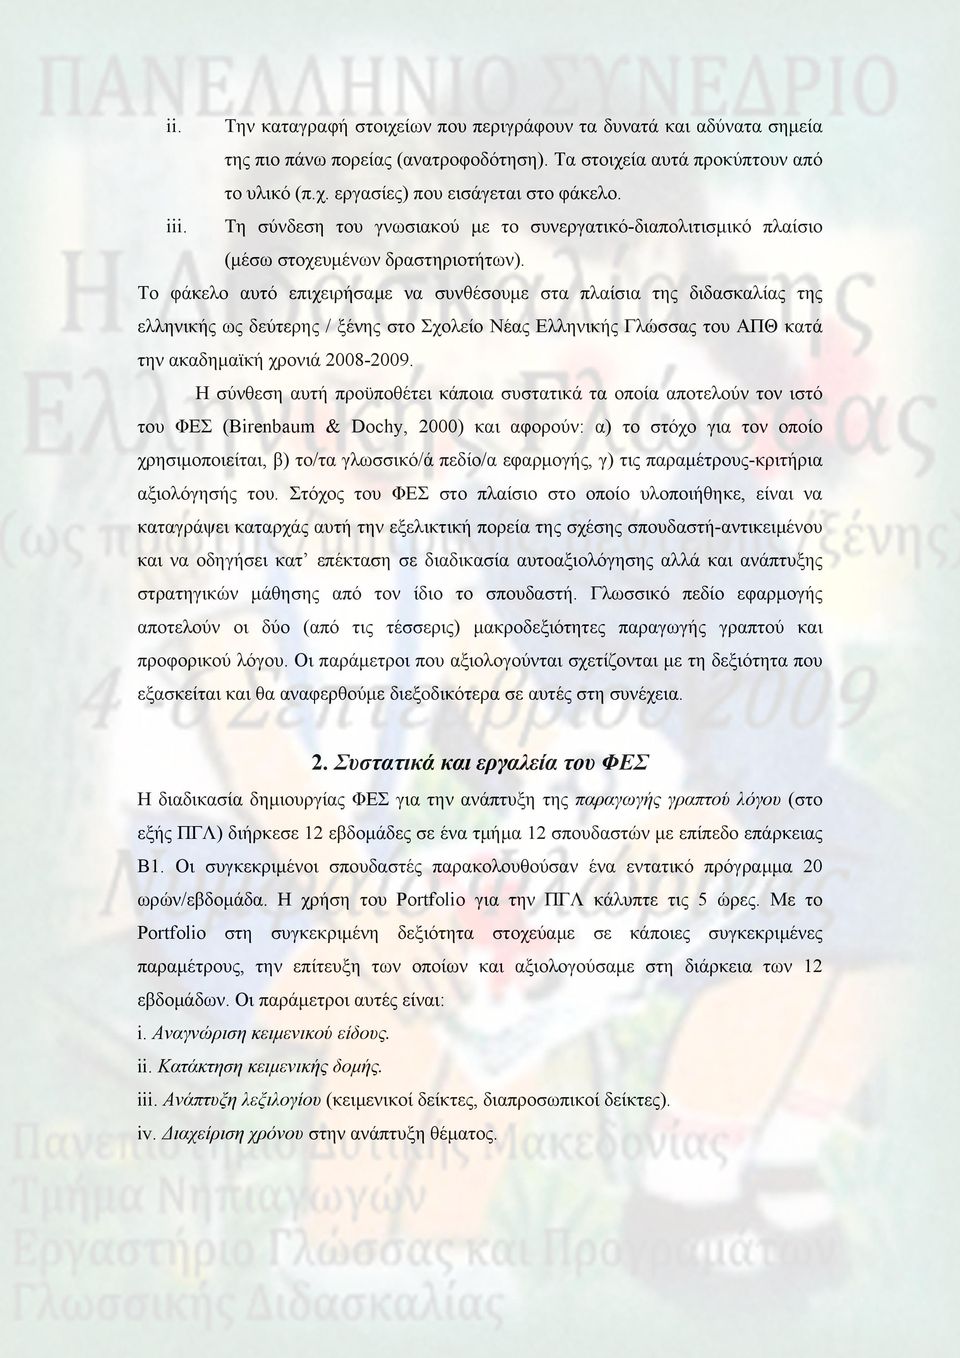 Το φάκελο αυτό επιχειρήσαμε να συνθέσουμε στα πλαίσια της διδασκαλίας της ελληνικής ως δεύτερης / ξένης στο Σχολείο Νέας Ελληνικής Γλώσσας του ΑΠΘ κατά την ακαδημαϊκή χρονιά 2008-2009.